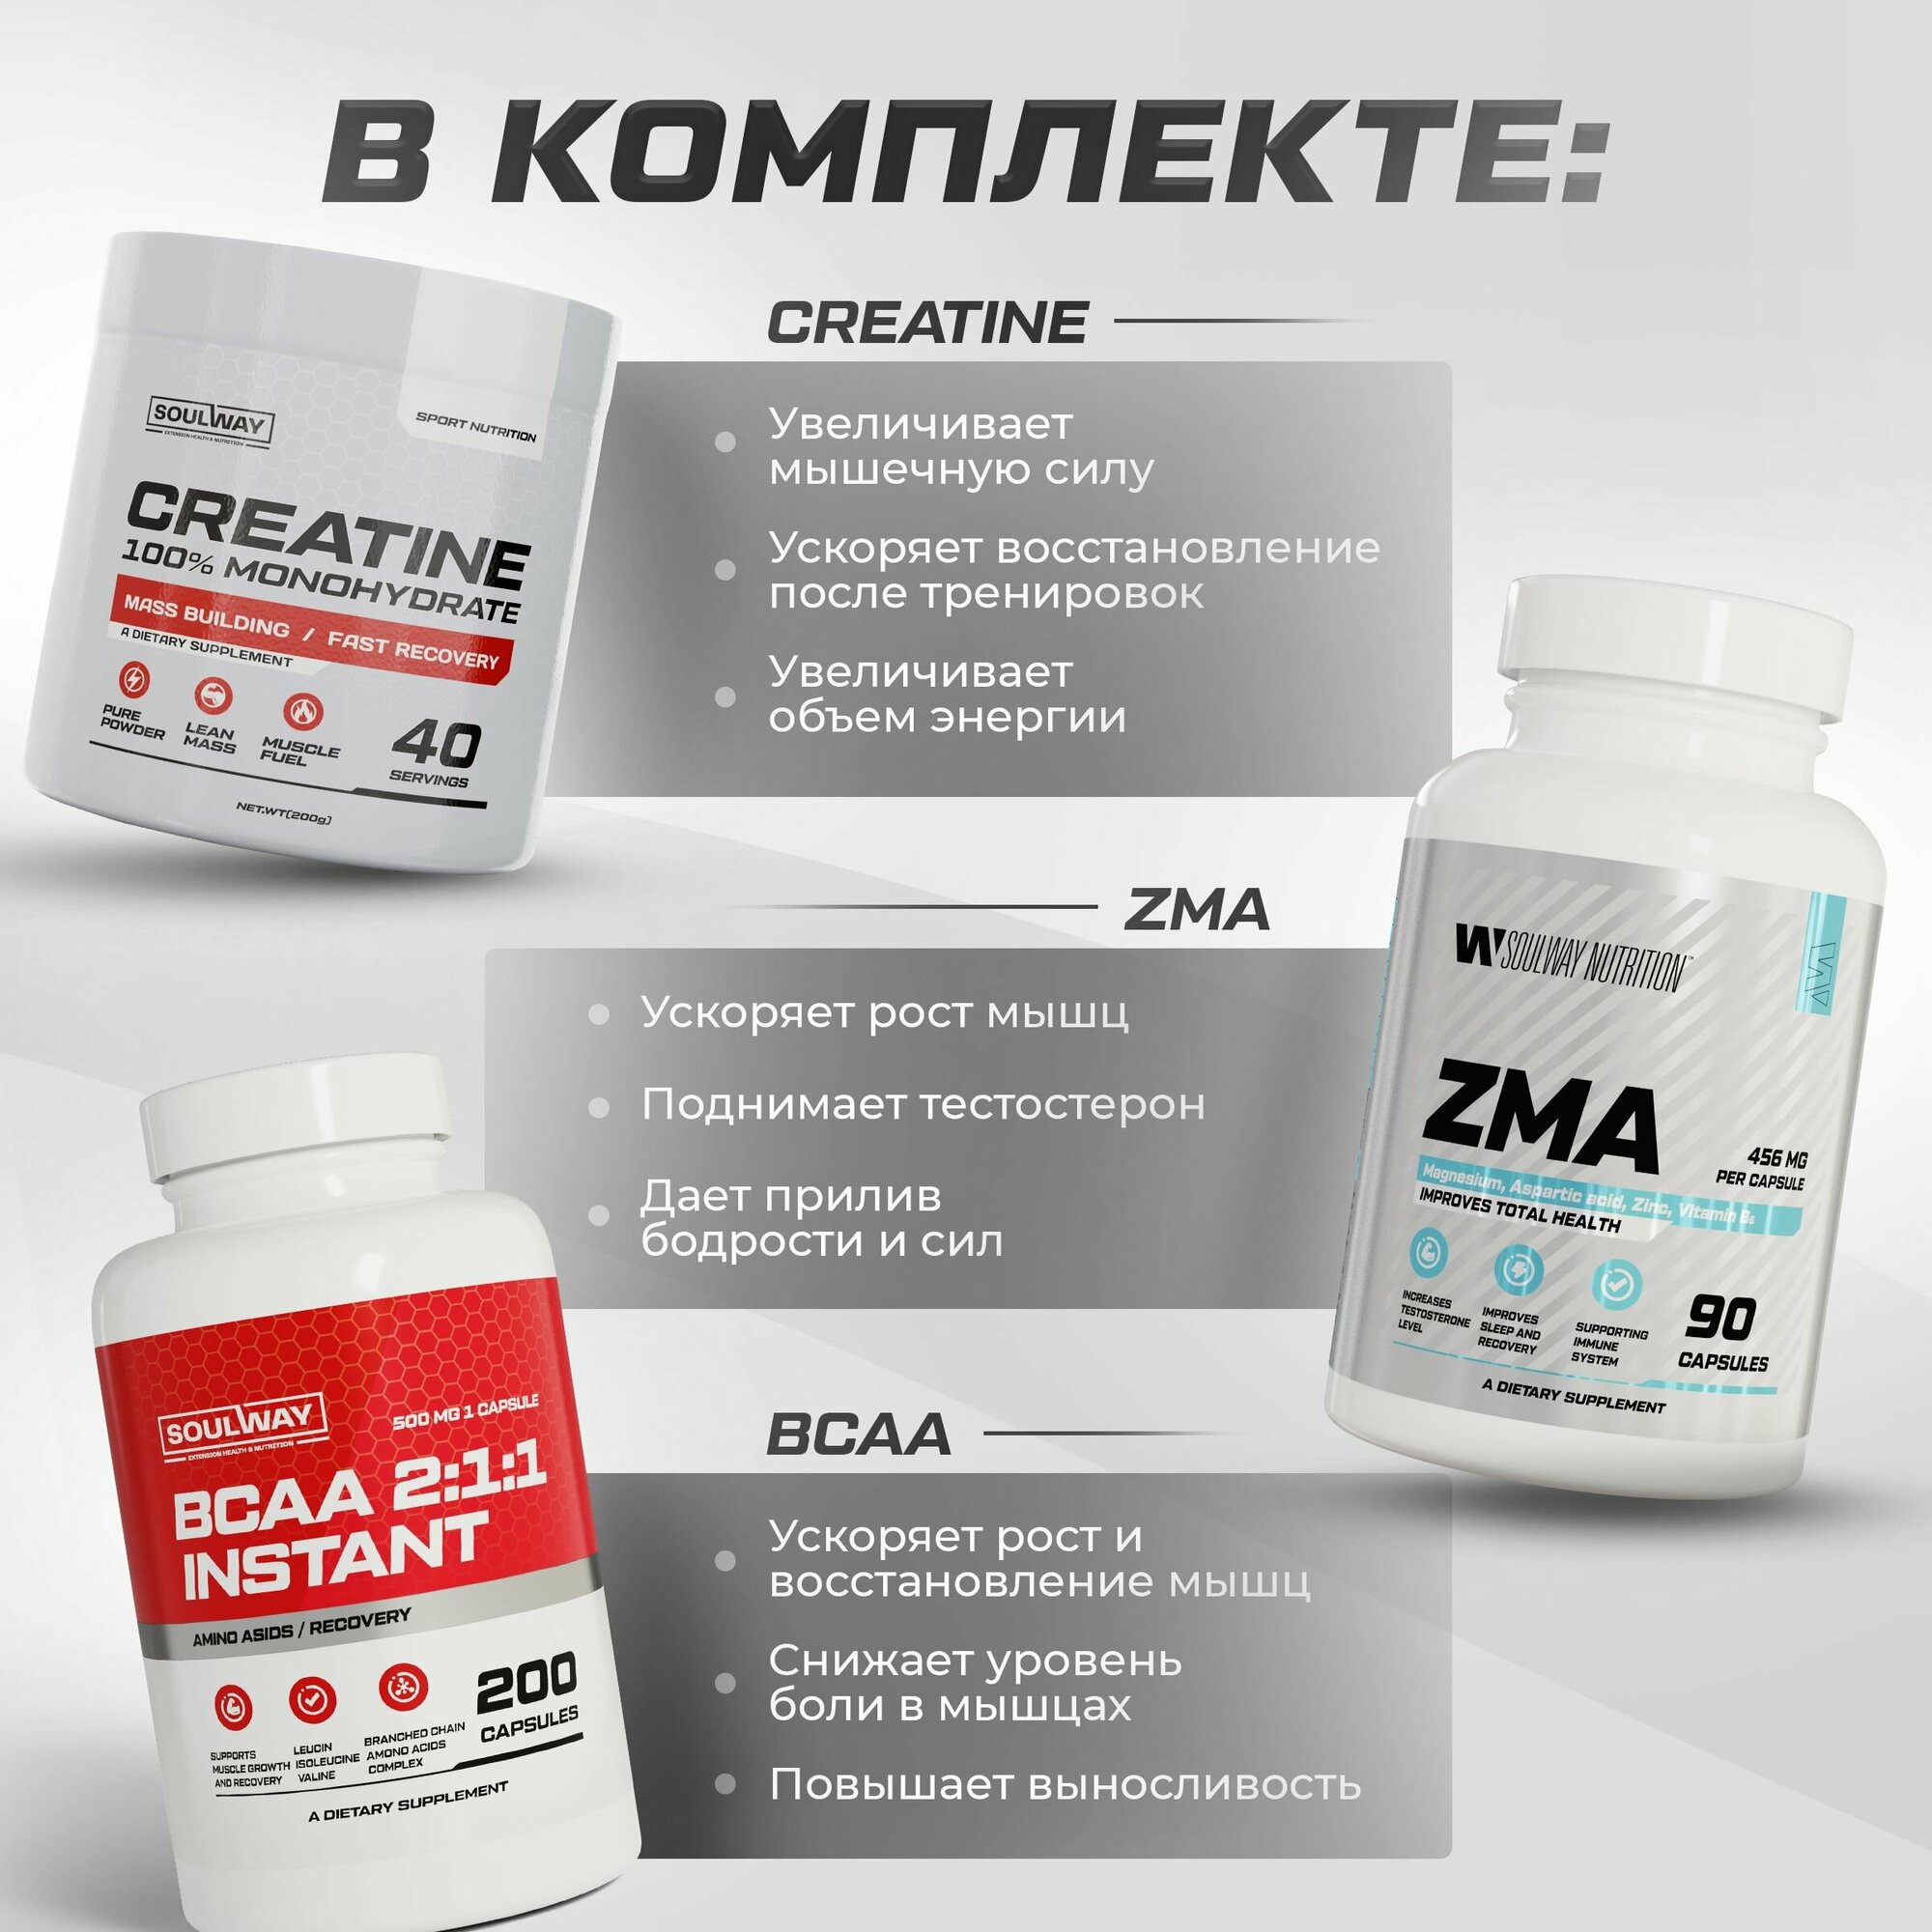 Полный набор для наращивания мышечной массы Гейнер + Протеин + Креатин + BCAA + ZMA